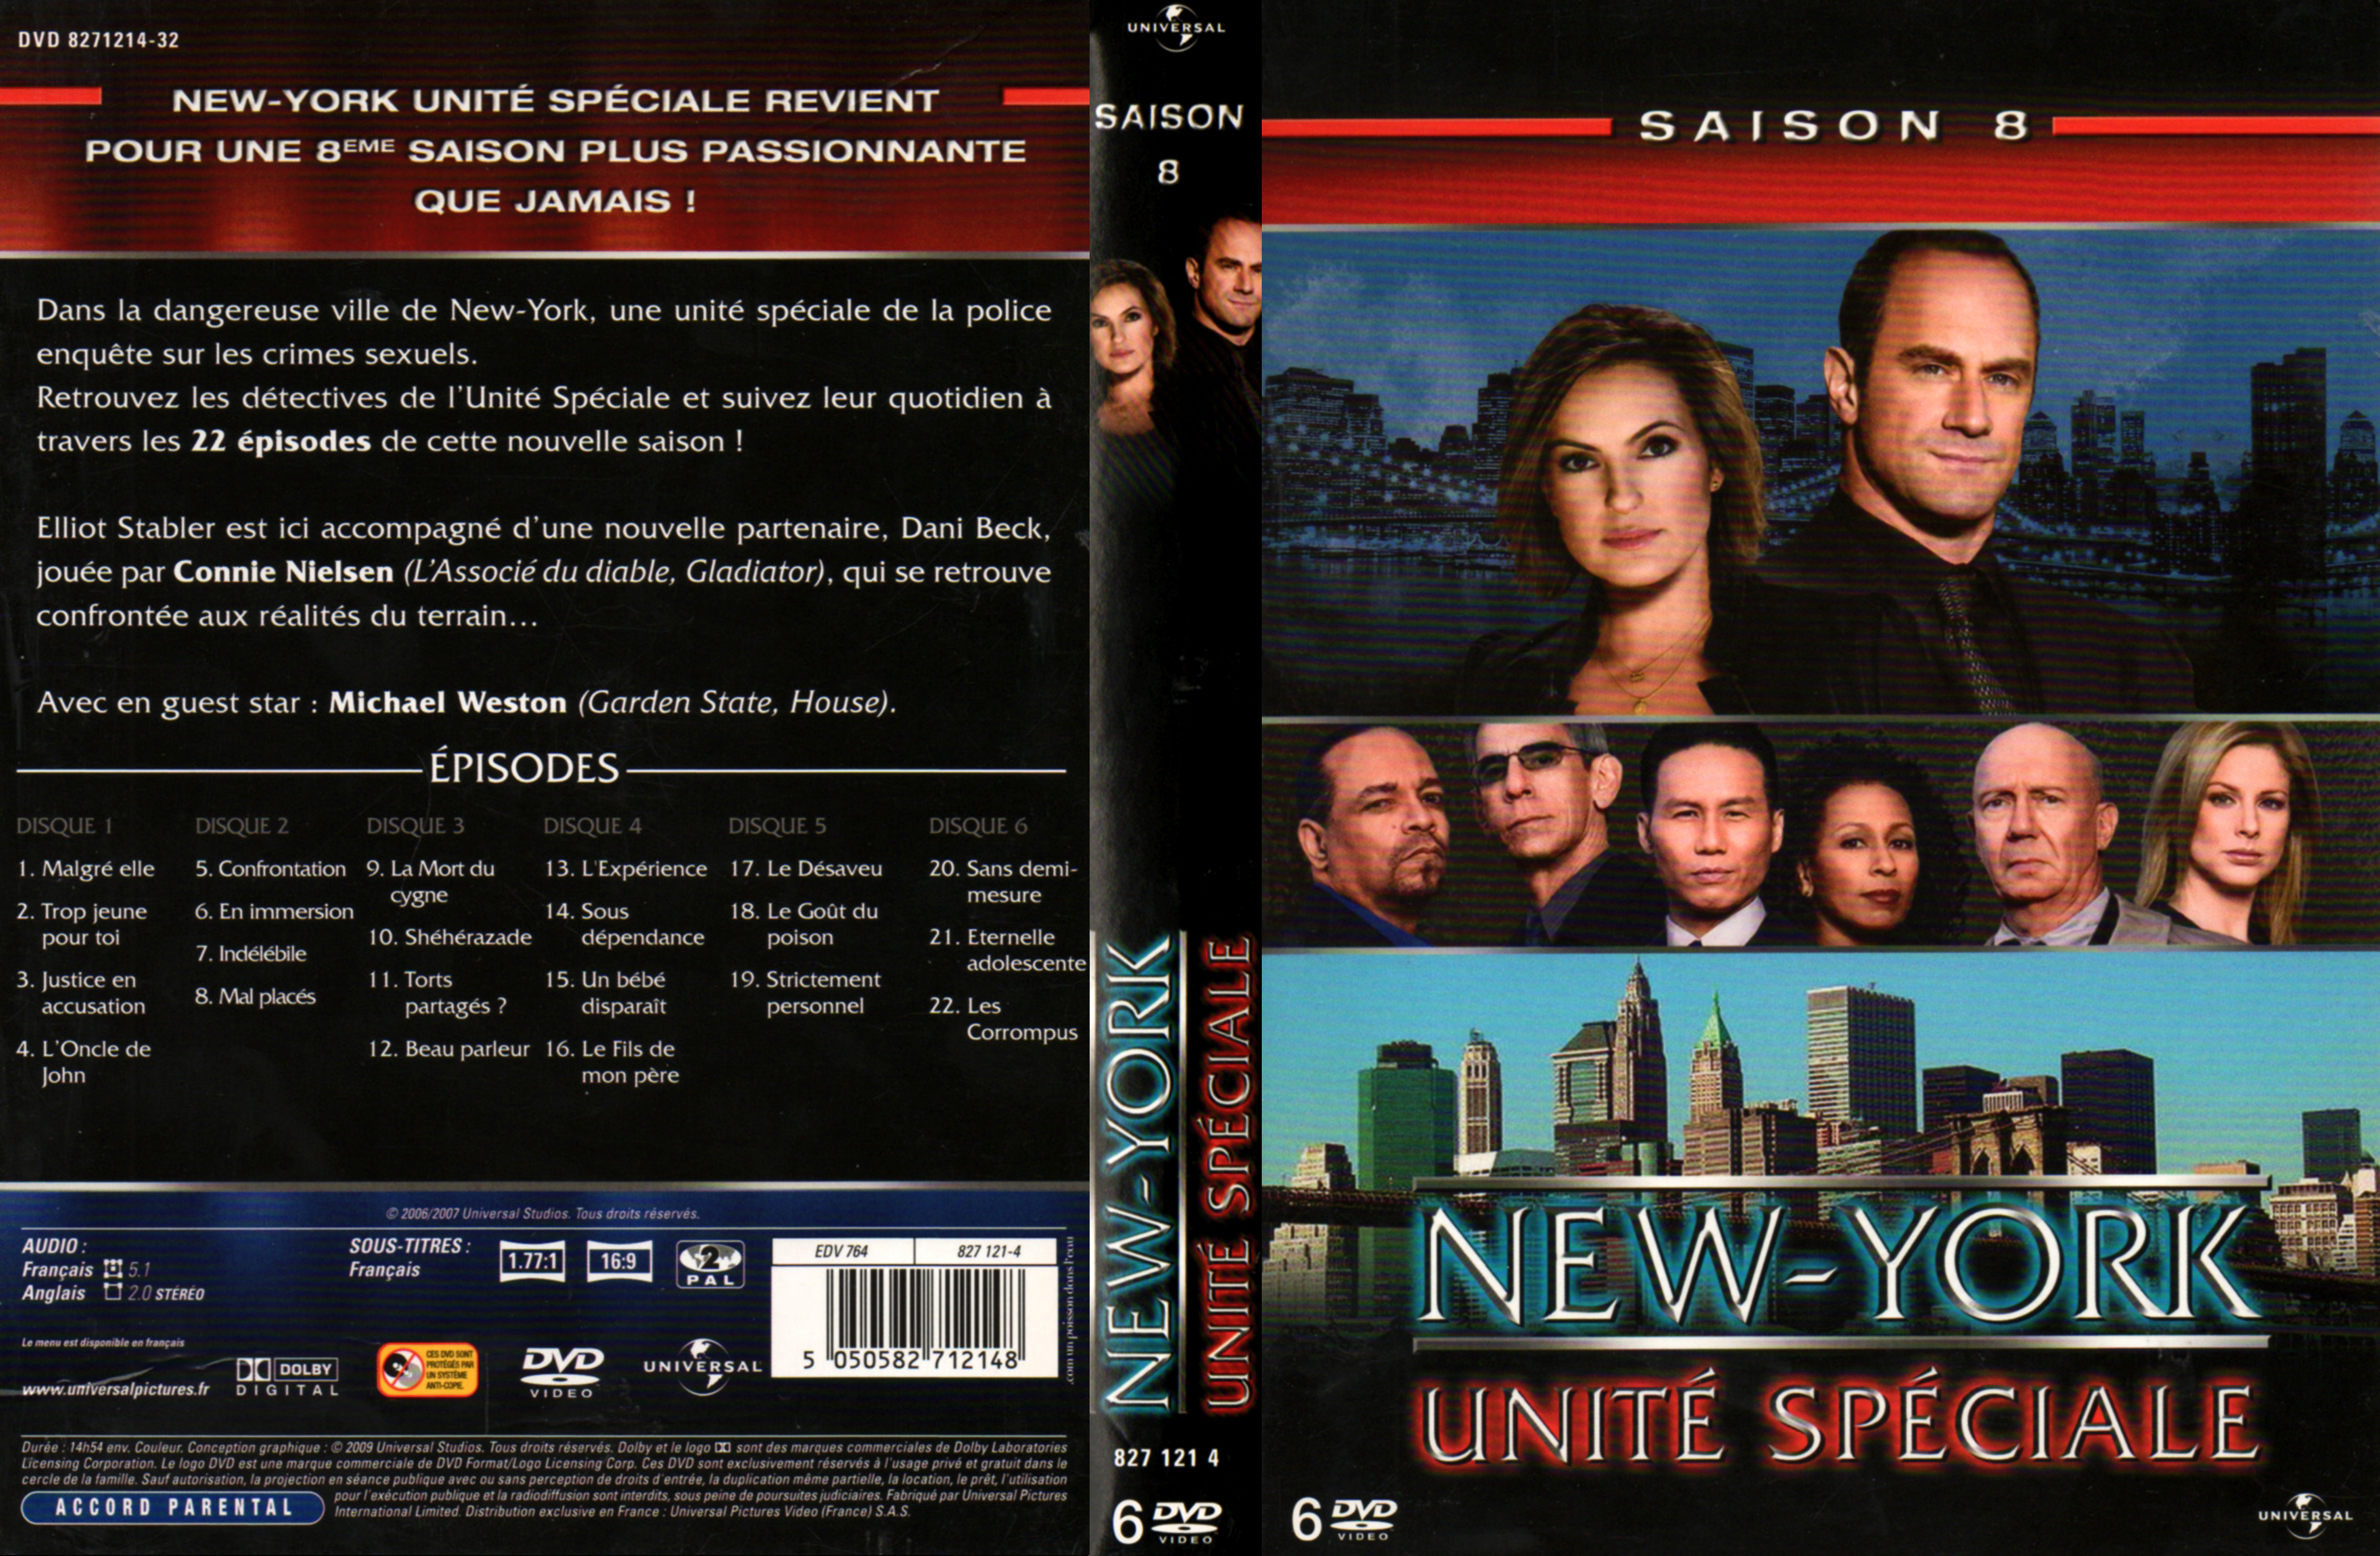 Jaquette DVD New York unit spciale saison 8 COFFRET